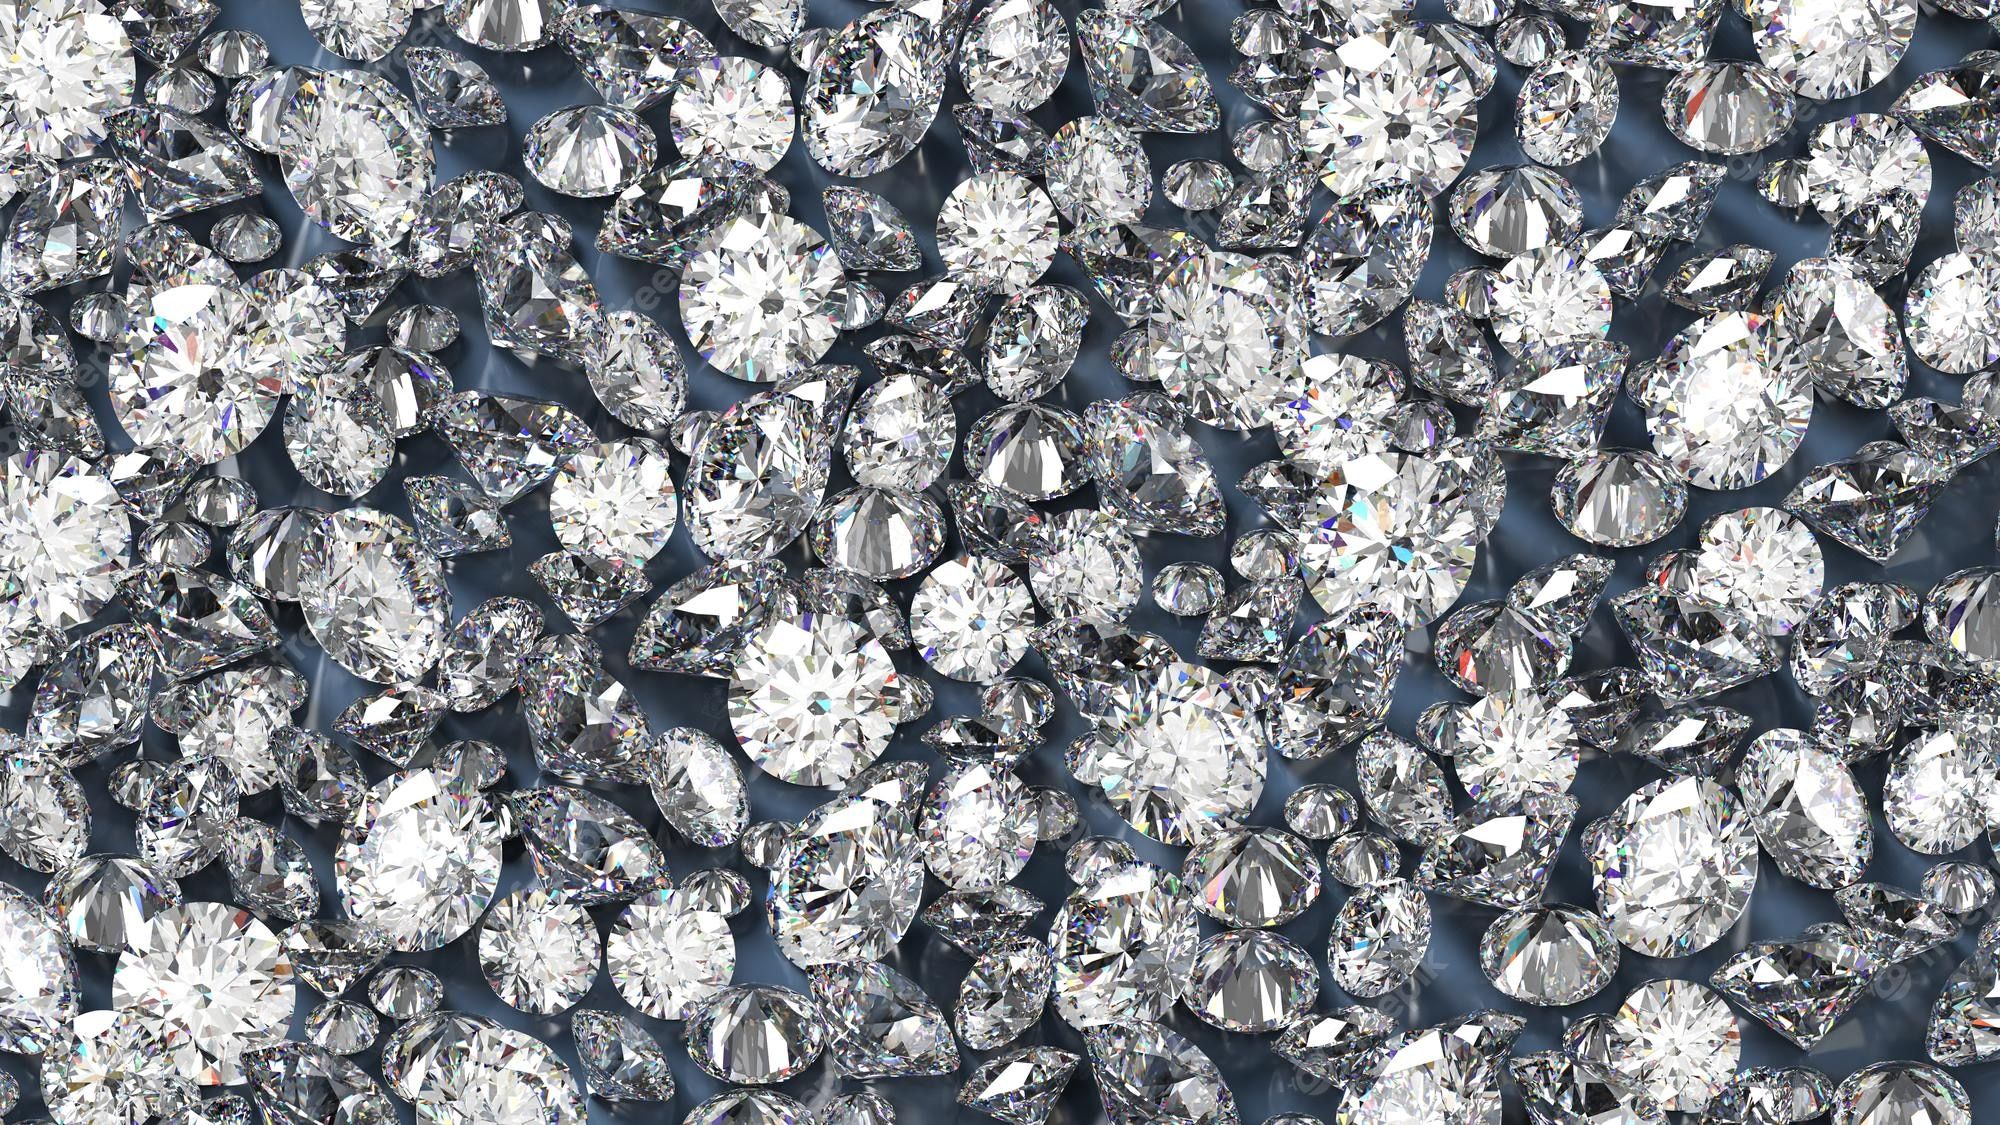  Diamant Hintergrundbild 2000x1125. Diamant Hintergrund Bilder Download auf Freepik